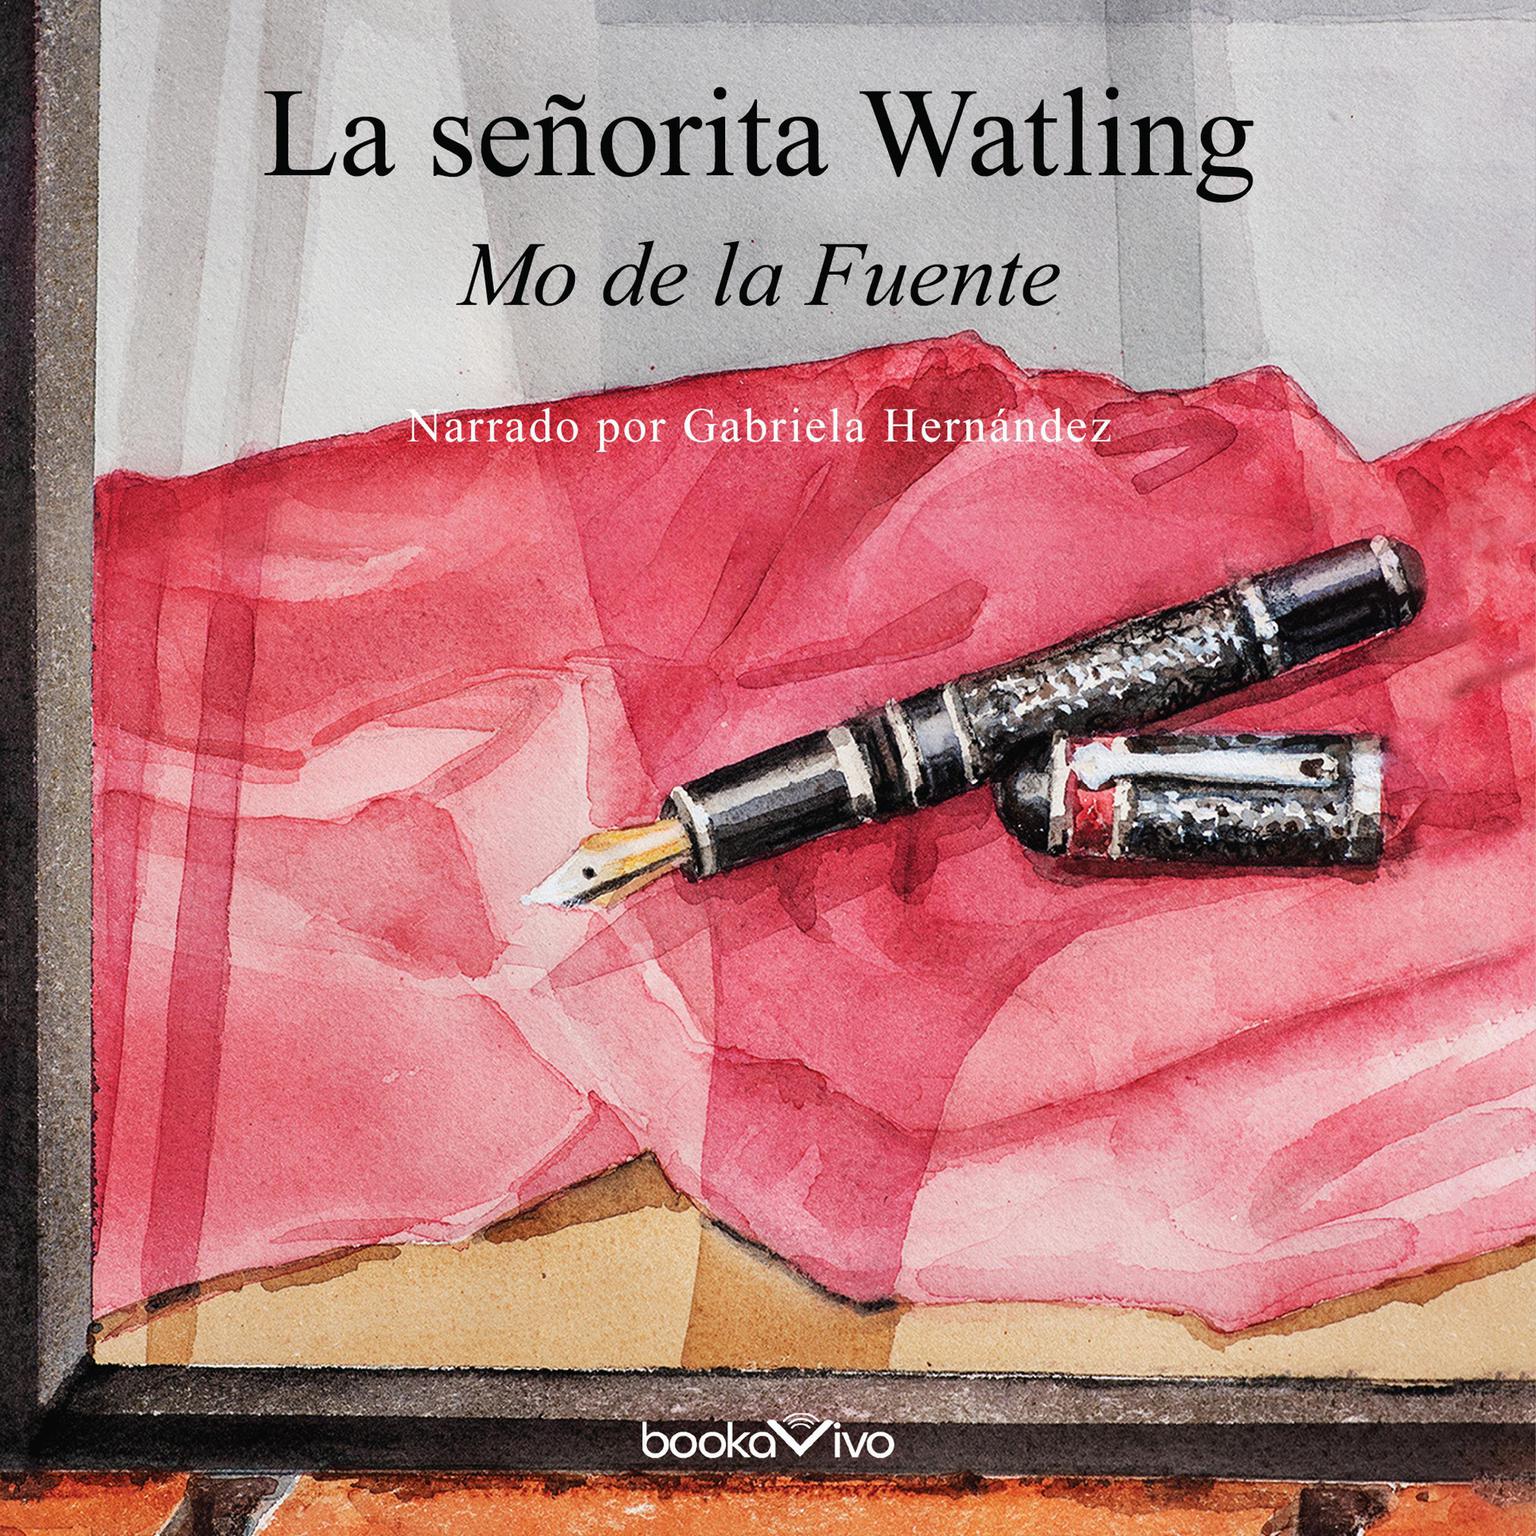 La señorita Watling Audiobook, by Mo De La Fuente